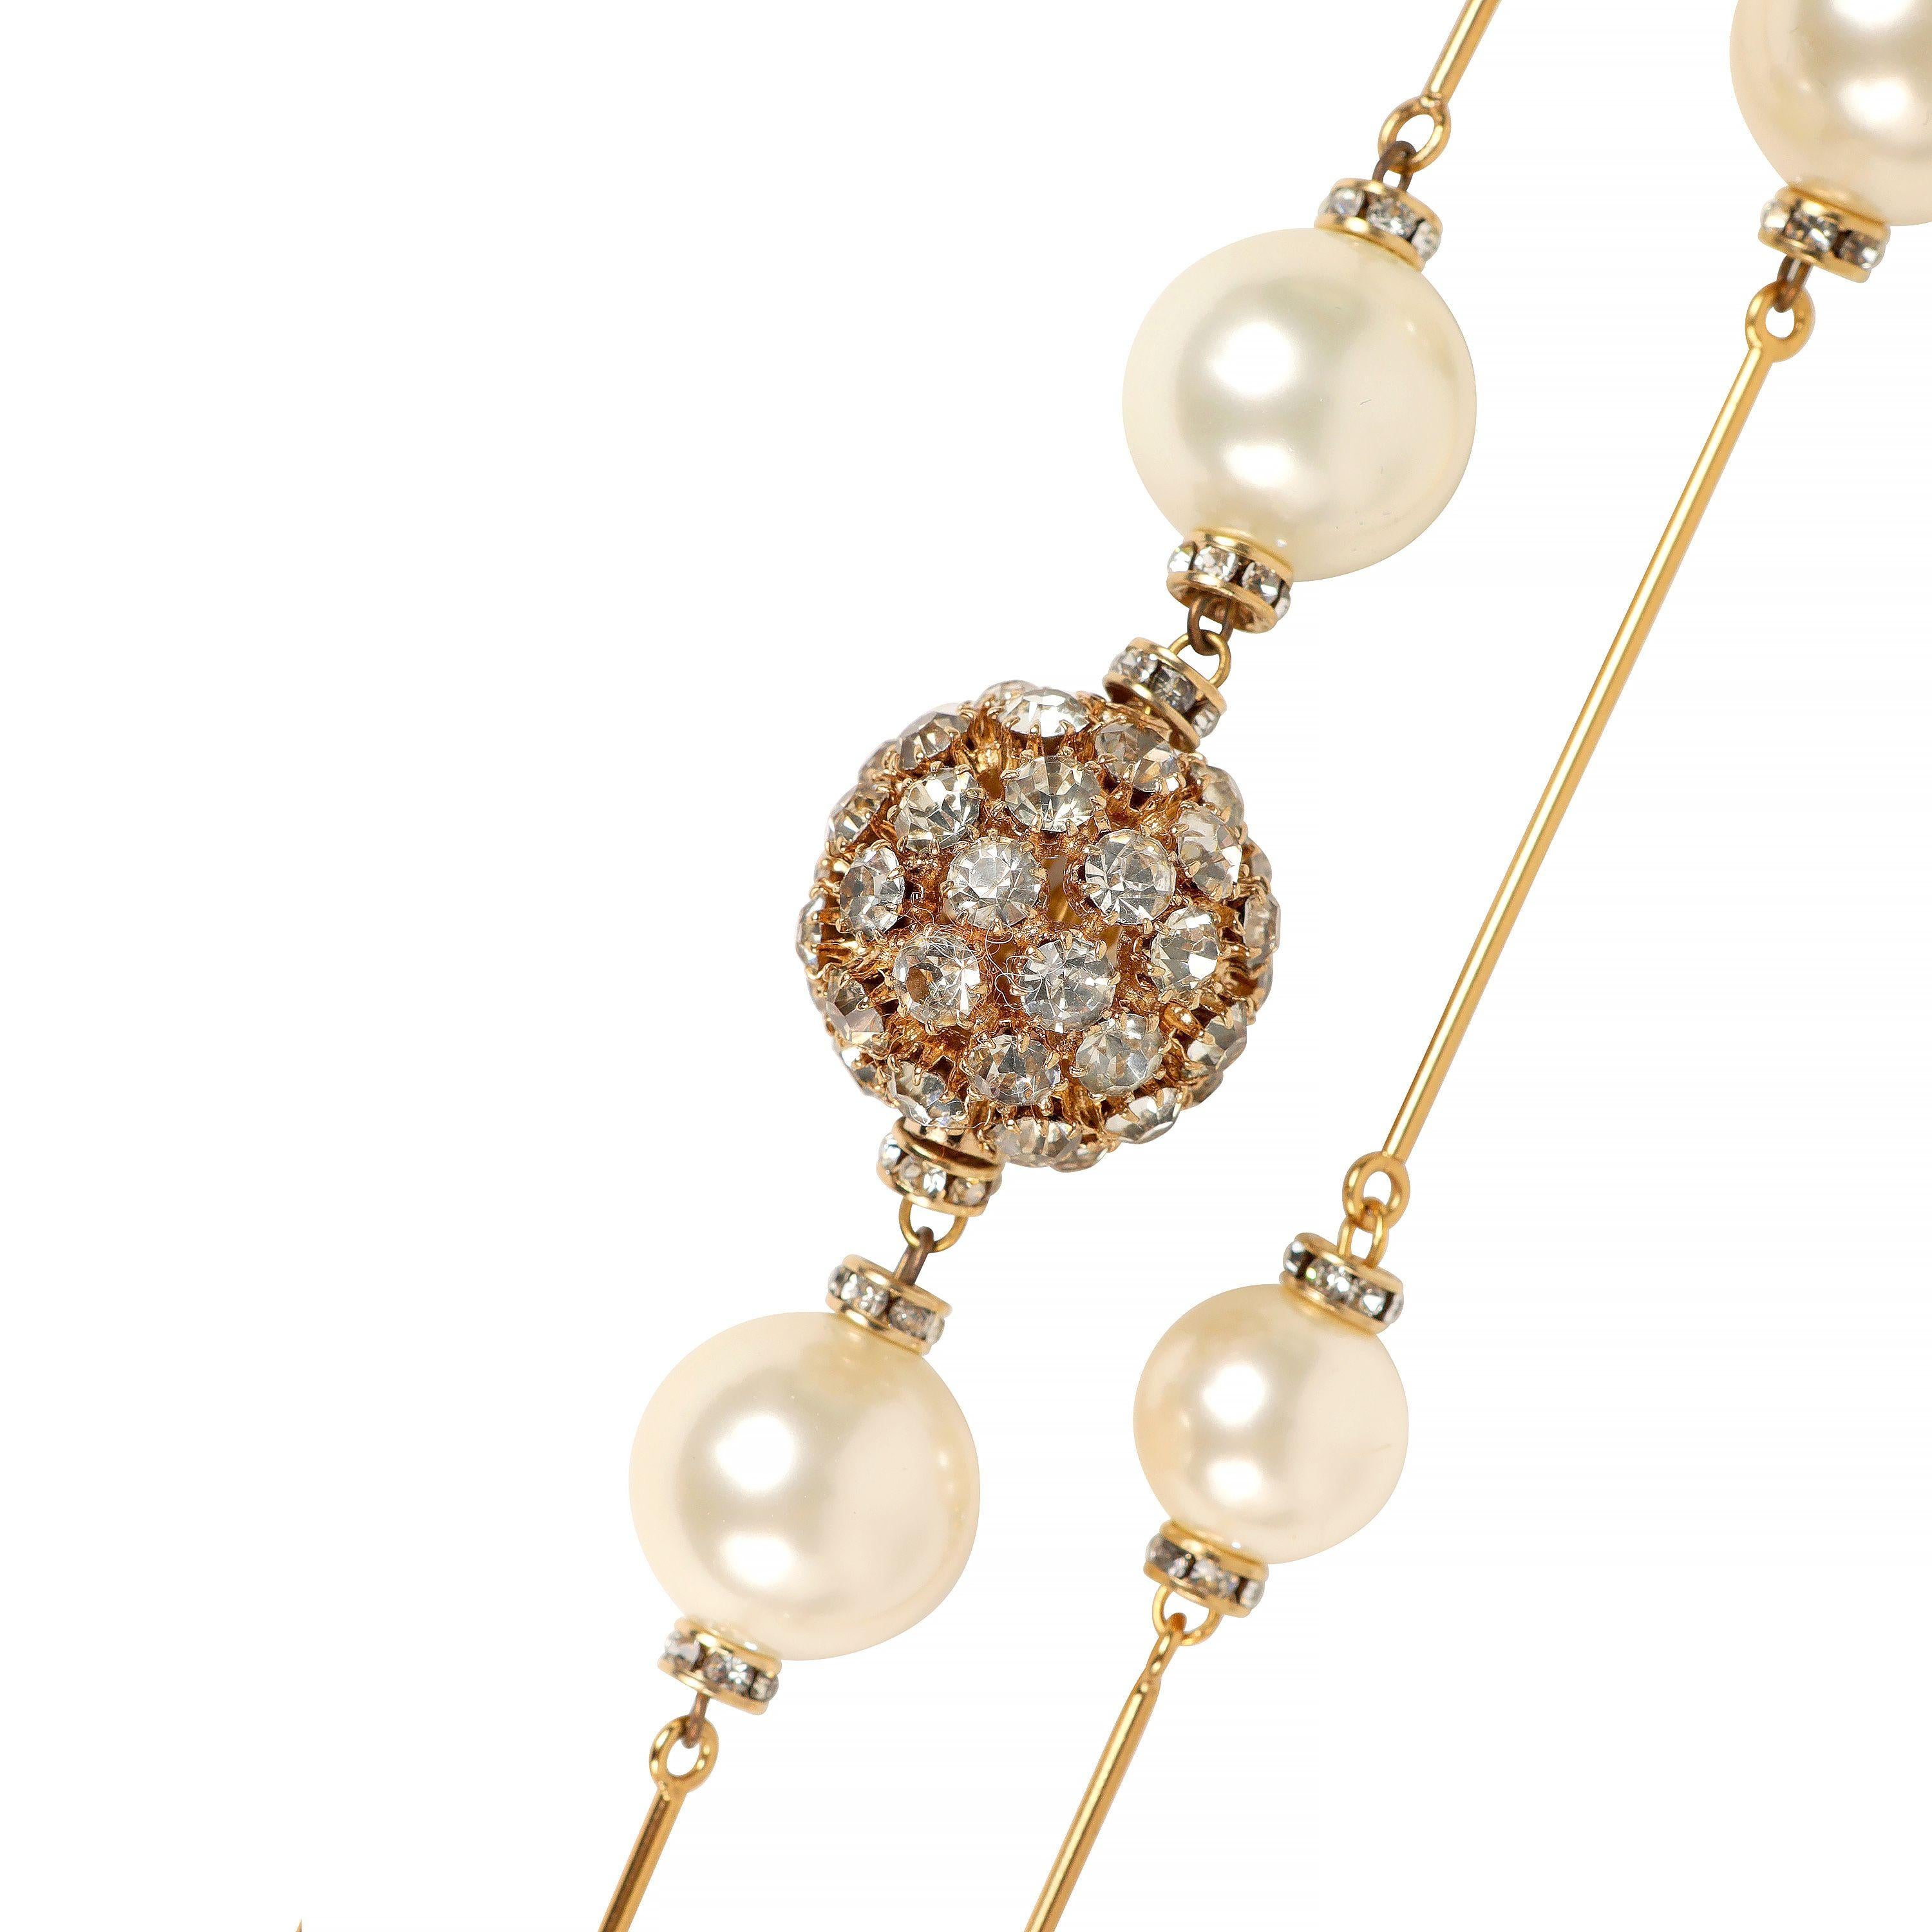 Diese authentische Chanel Perle und Gold Pin Extra Long Necklace ist in tadellosem Zustand.  Einzeln oder doppelt getragen.  Große Kunstperlen, die mit goldfarbenen Stiften